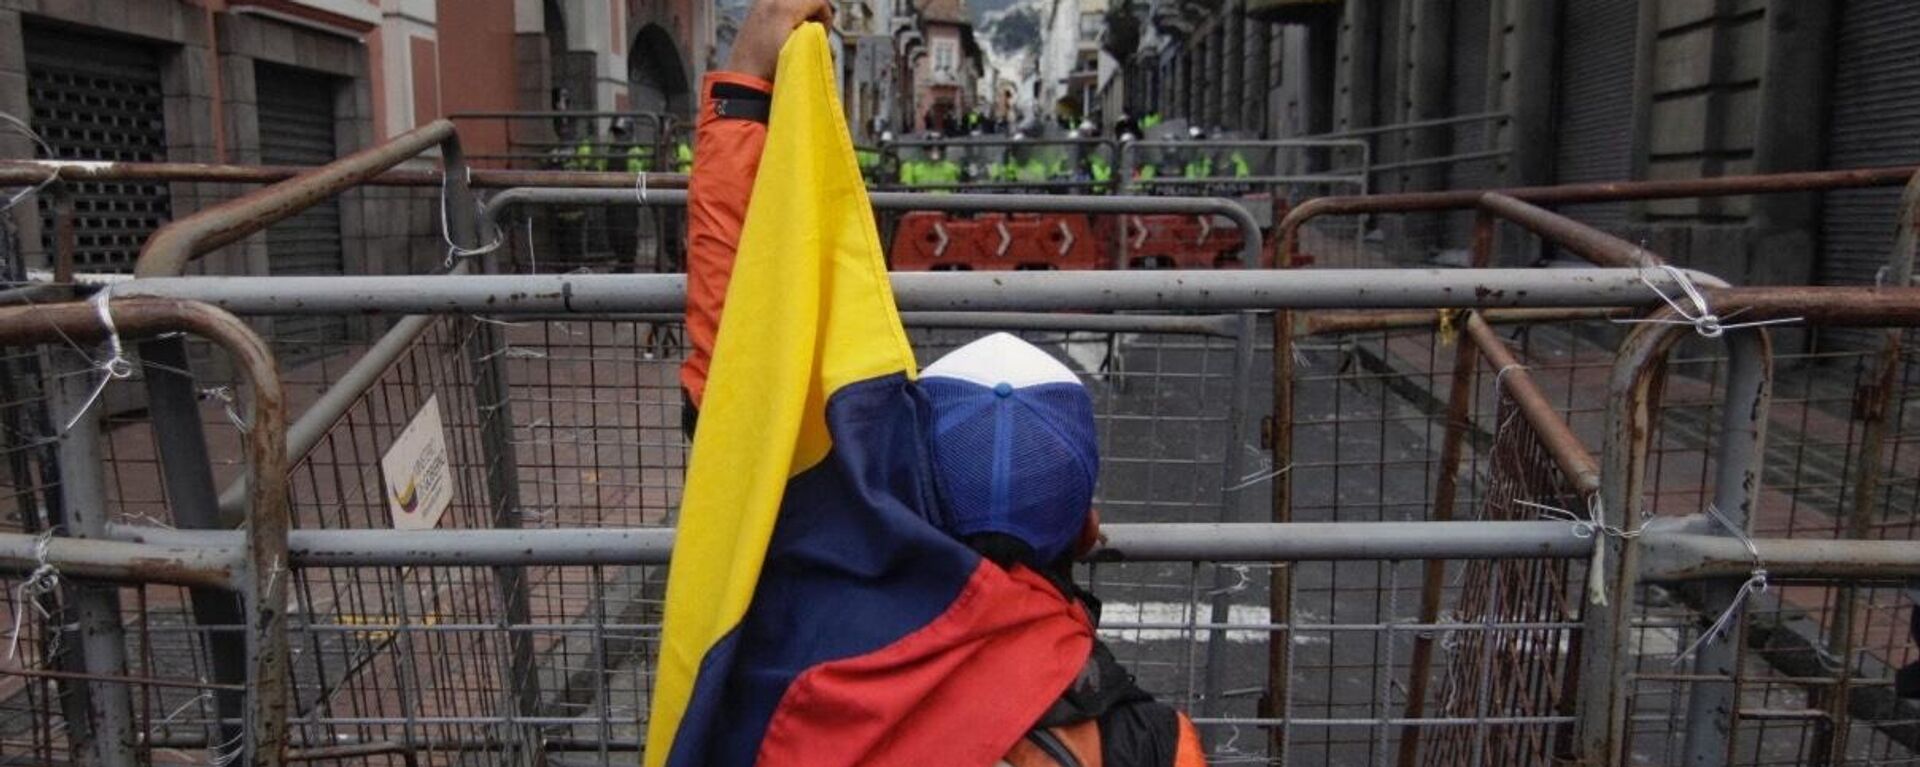 El bloqueo de calles durante las protestas en Ecuador - Sputnik Mundo, 1920, 22.06.2022